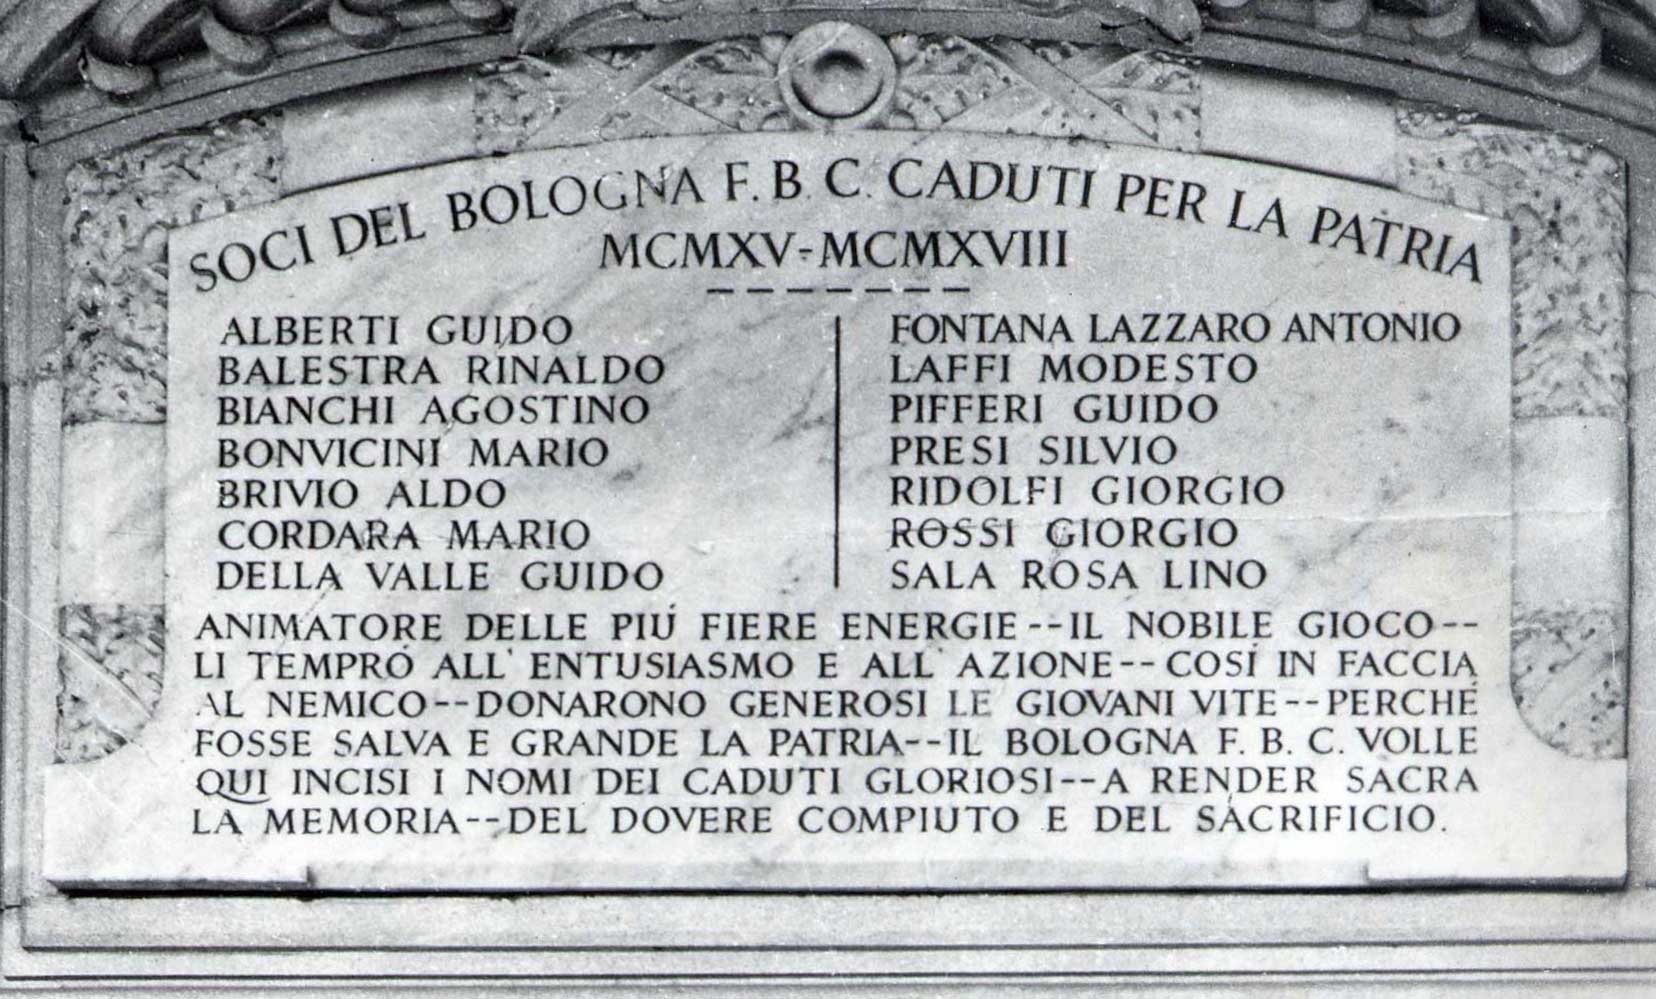 crediti immagine: Storia e Memoria di Bologna